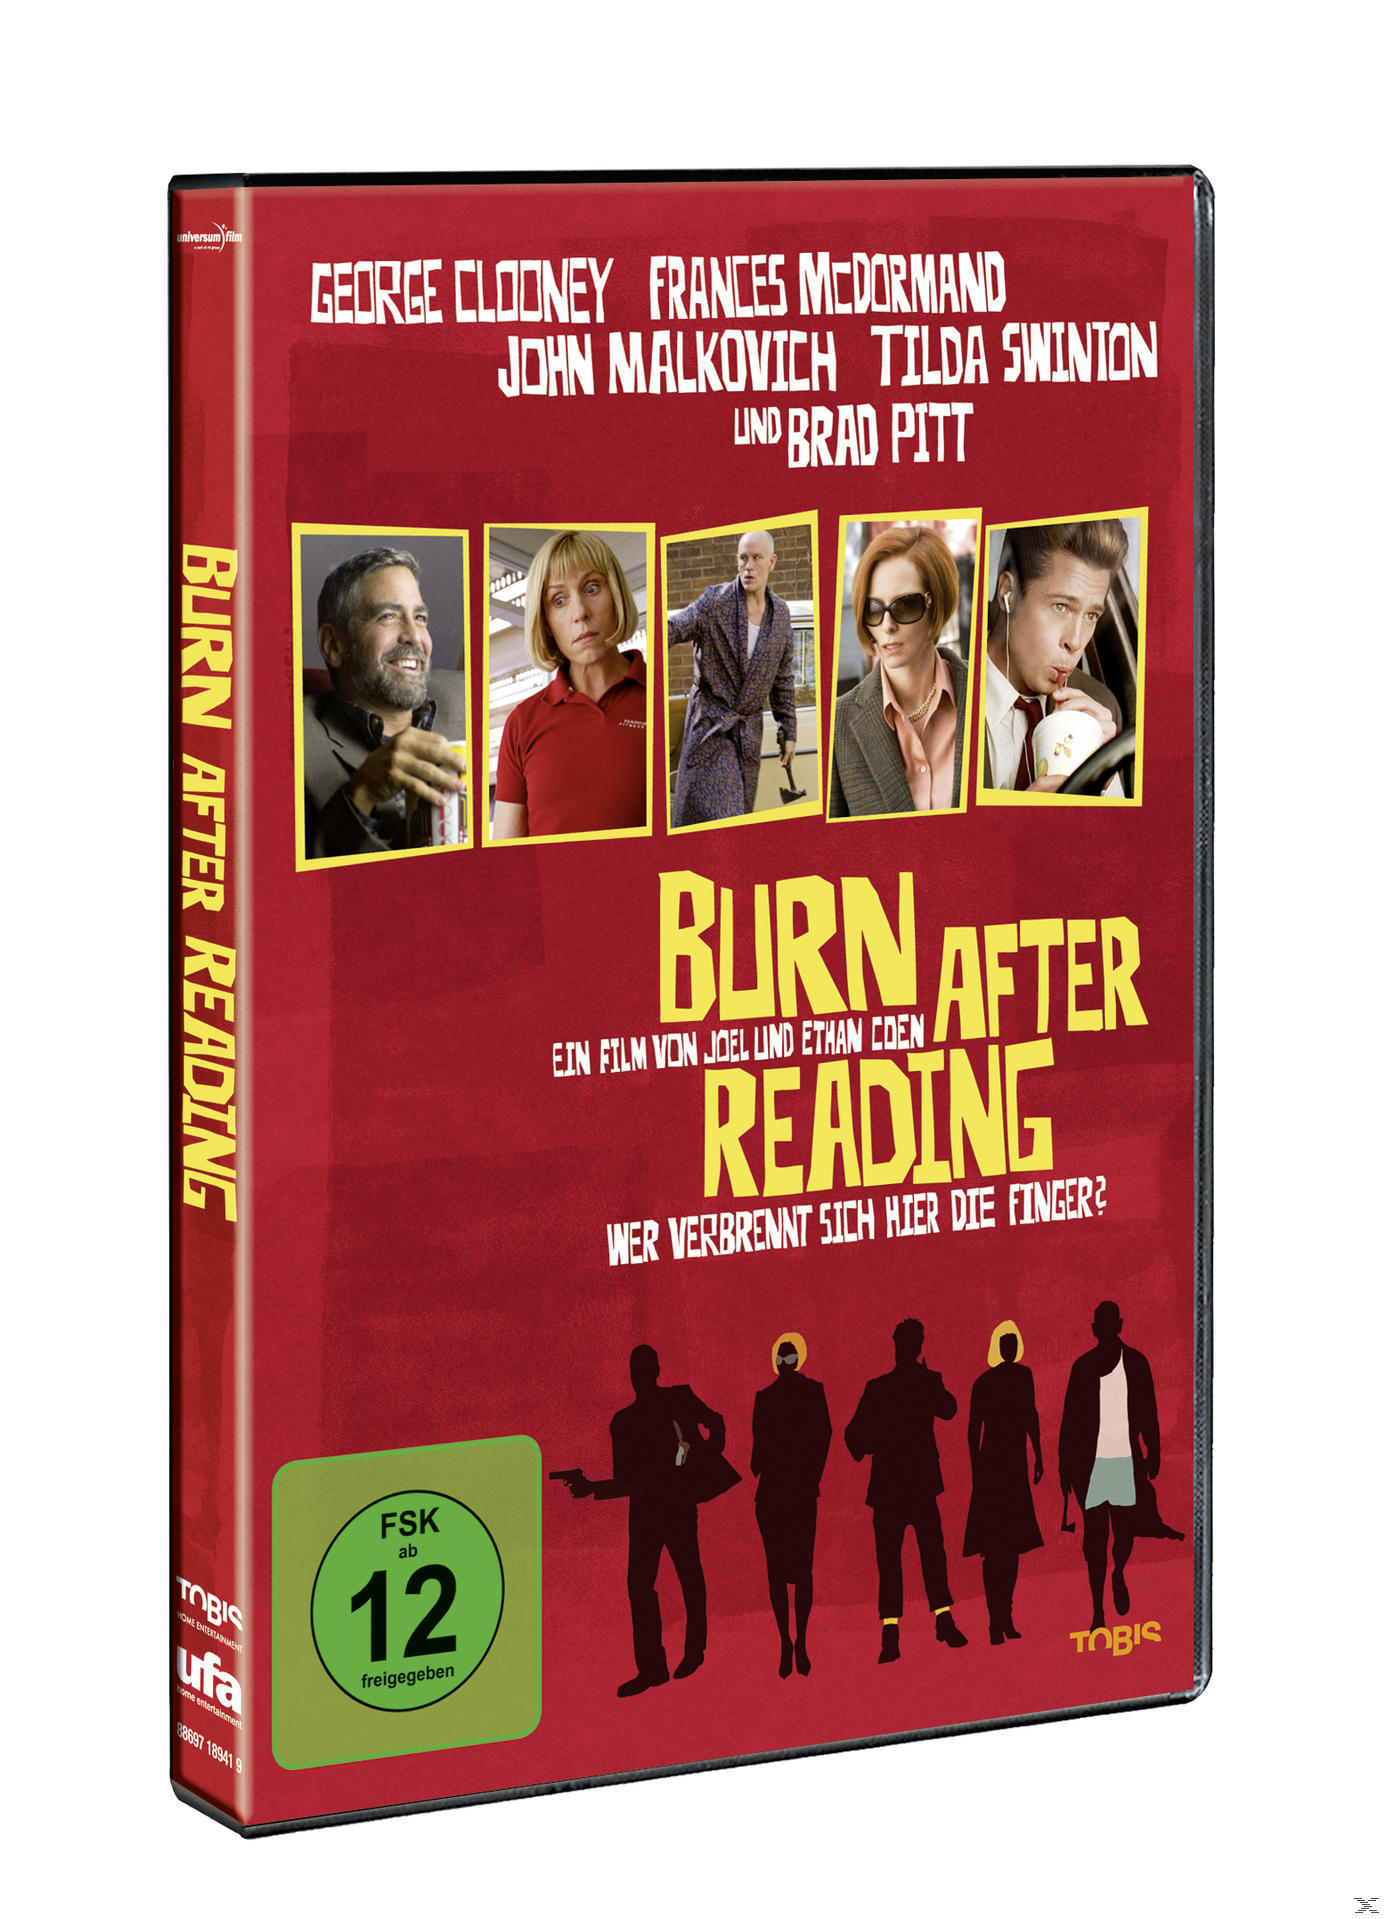 After sich verbrennt - Reading die DVD Finger? hier Wer Burn